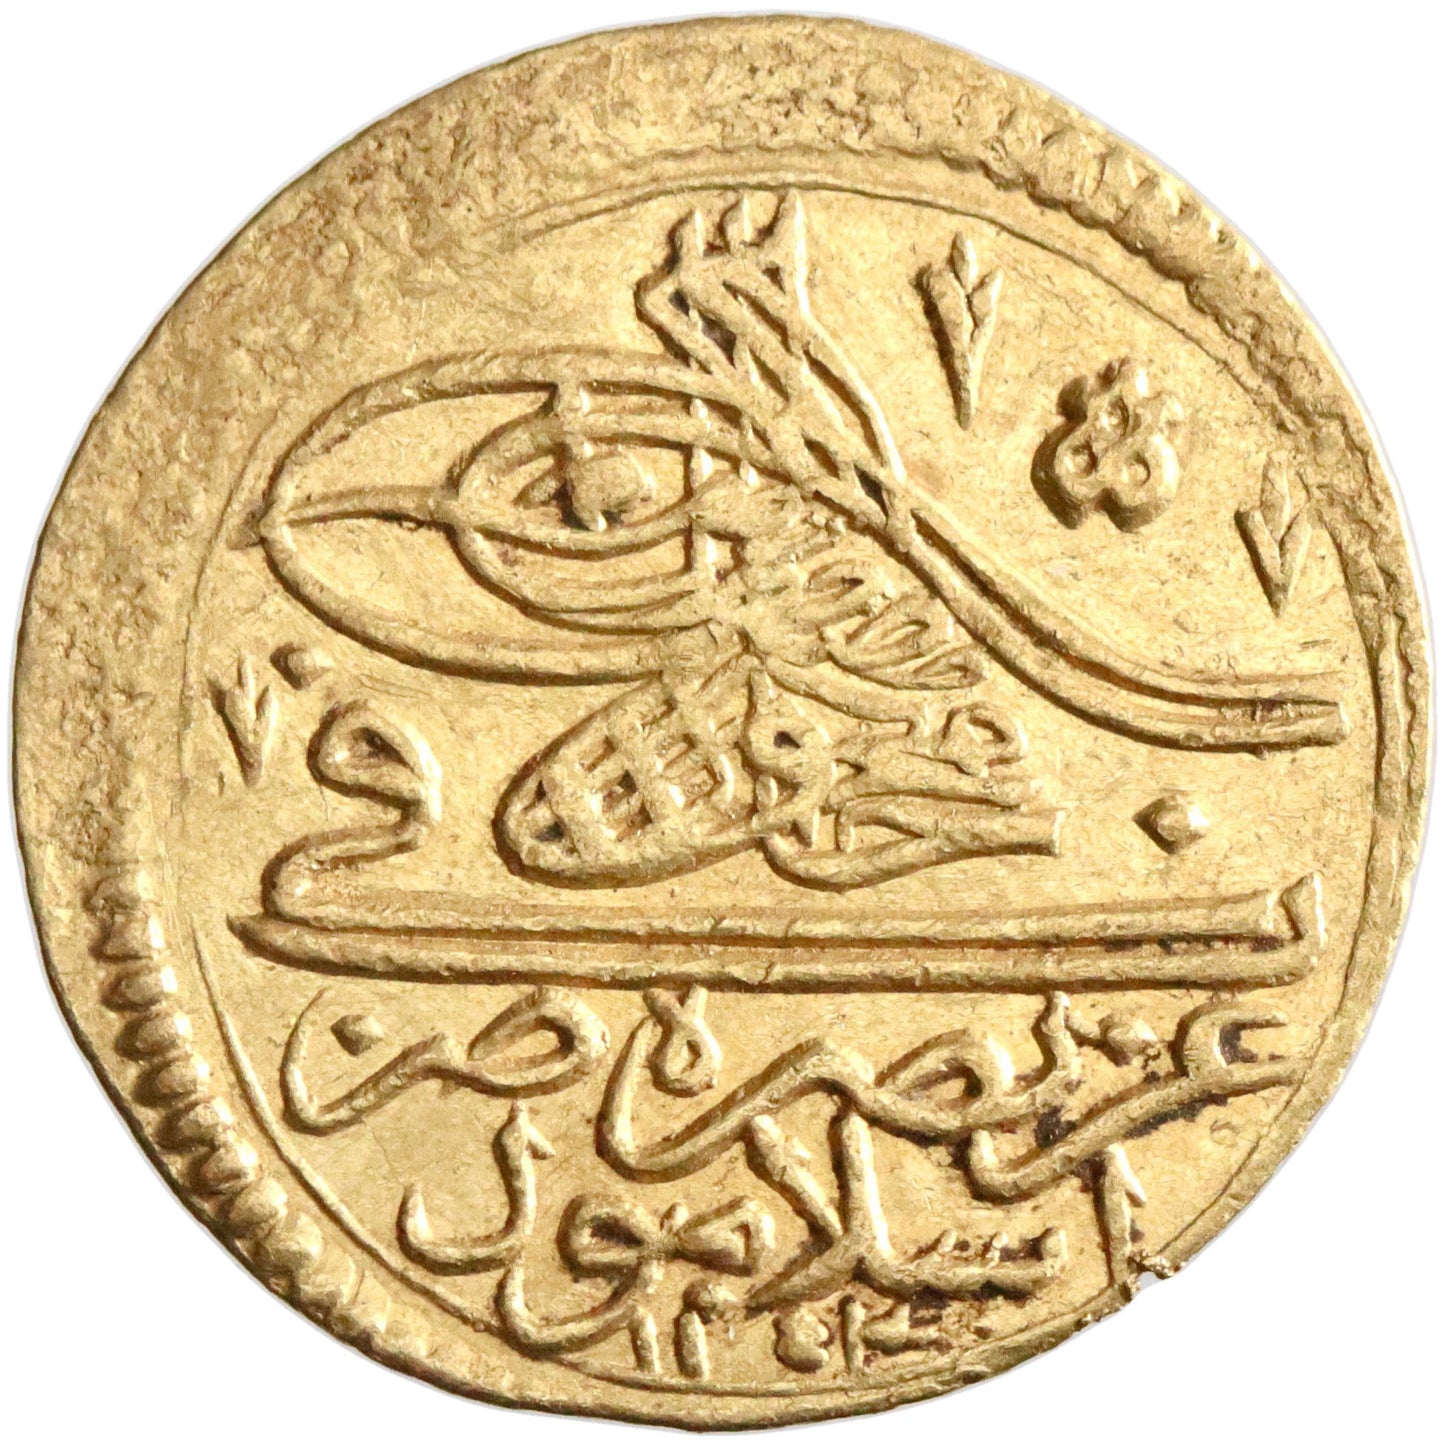 Ottoman, Mahmud I, gold zeri mahbub, Islambul (Istanbul) mint, AH 1143